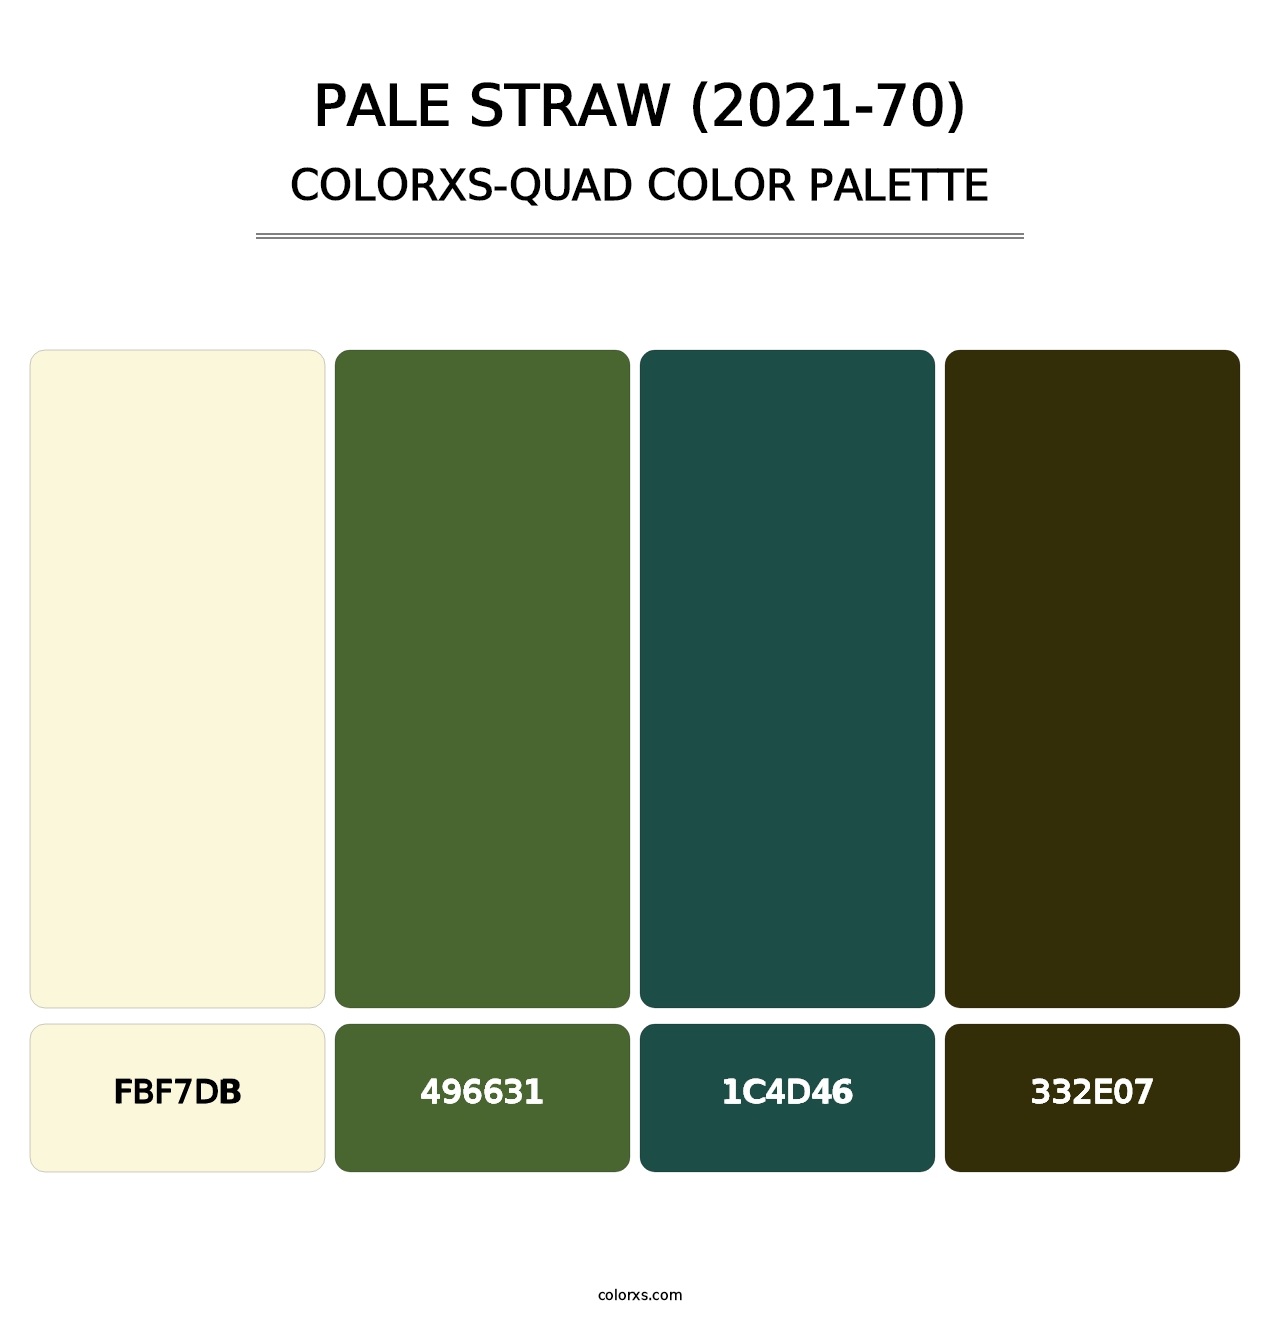 Pale Straw (2021-70) - Colorxs Quad Palette